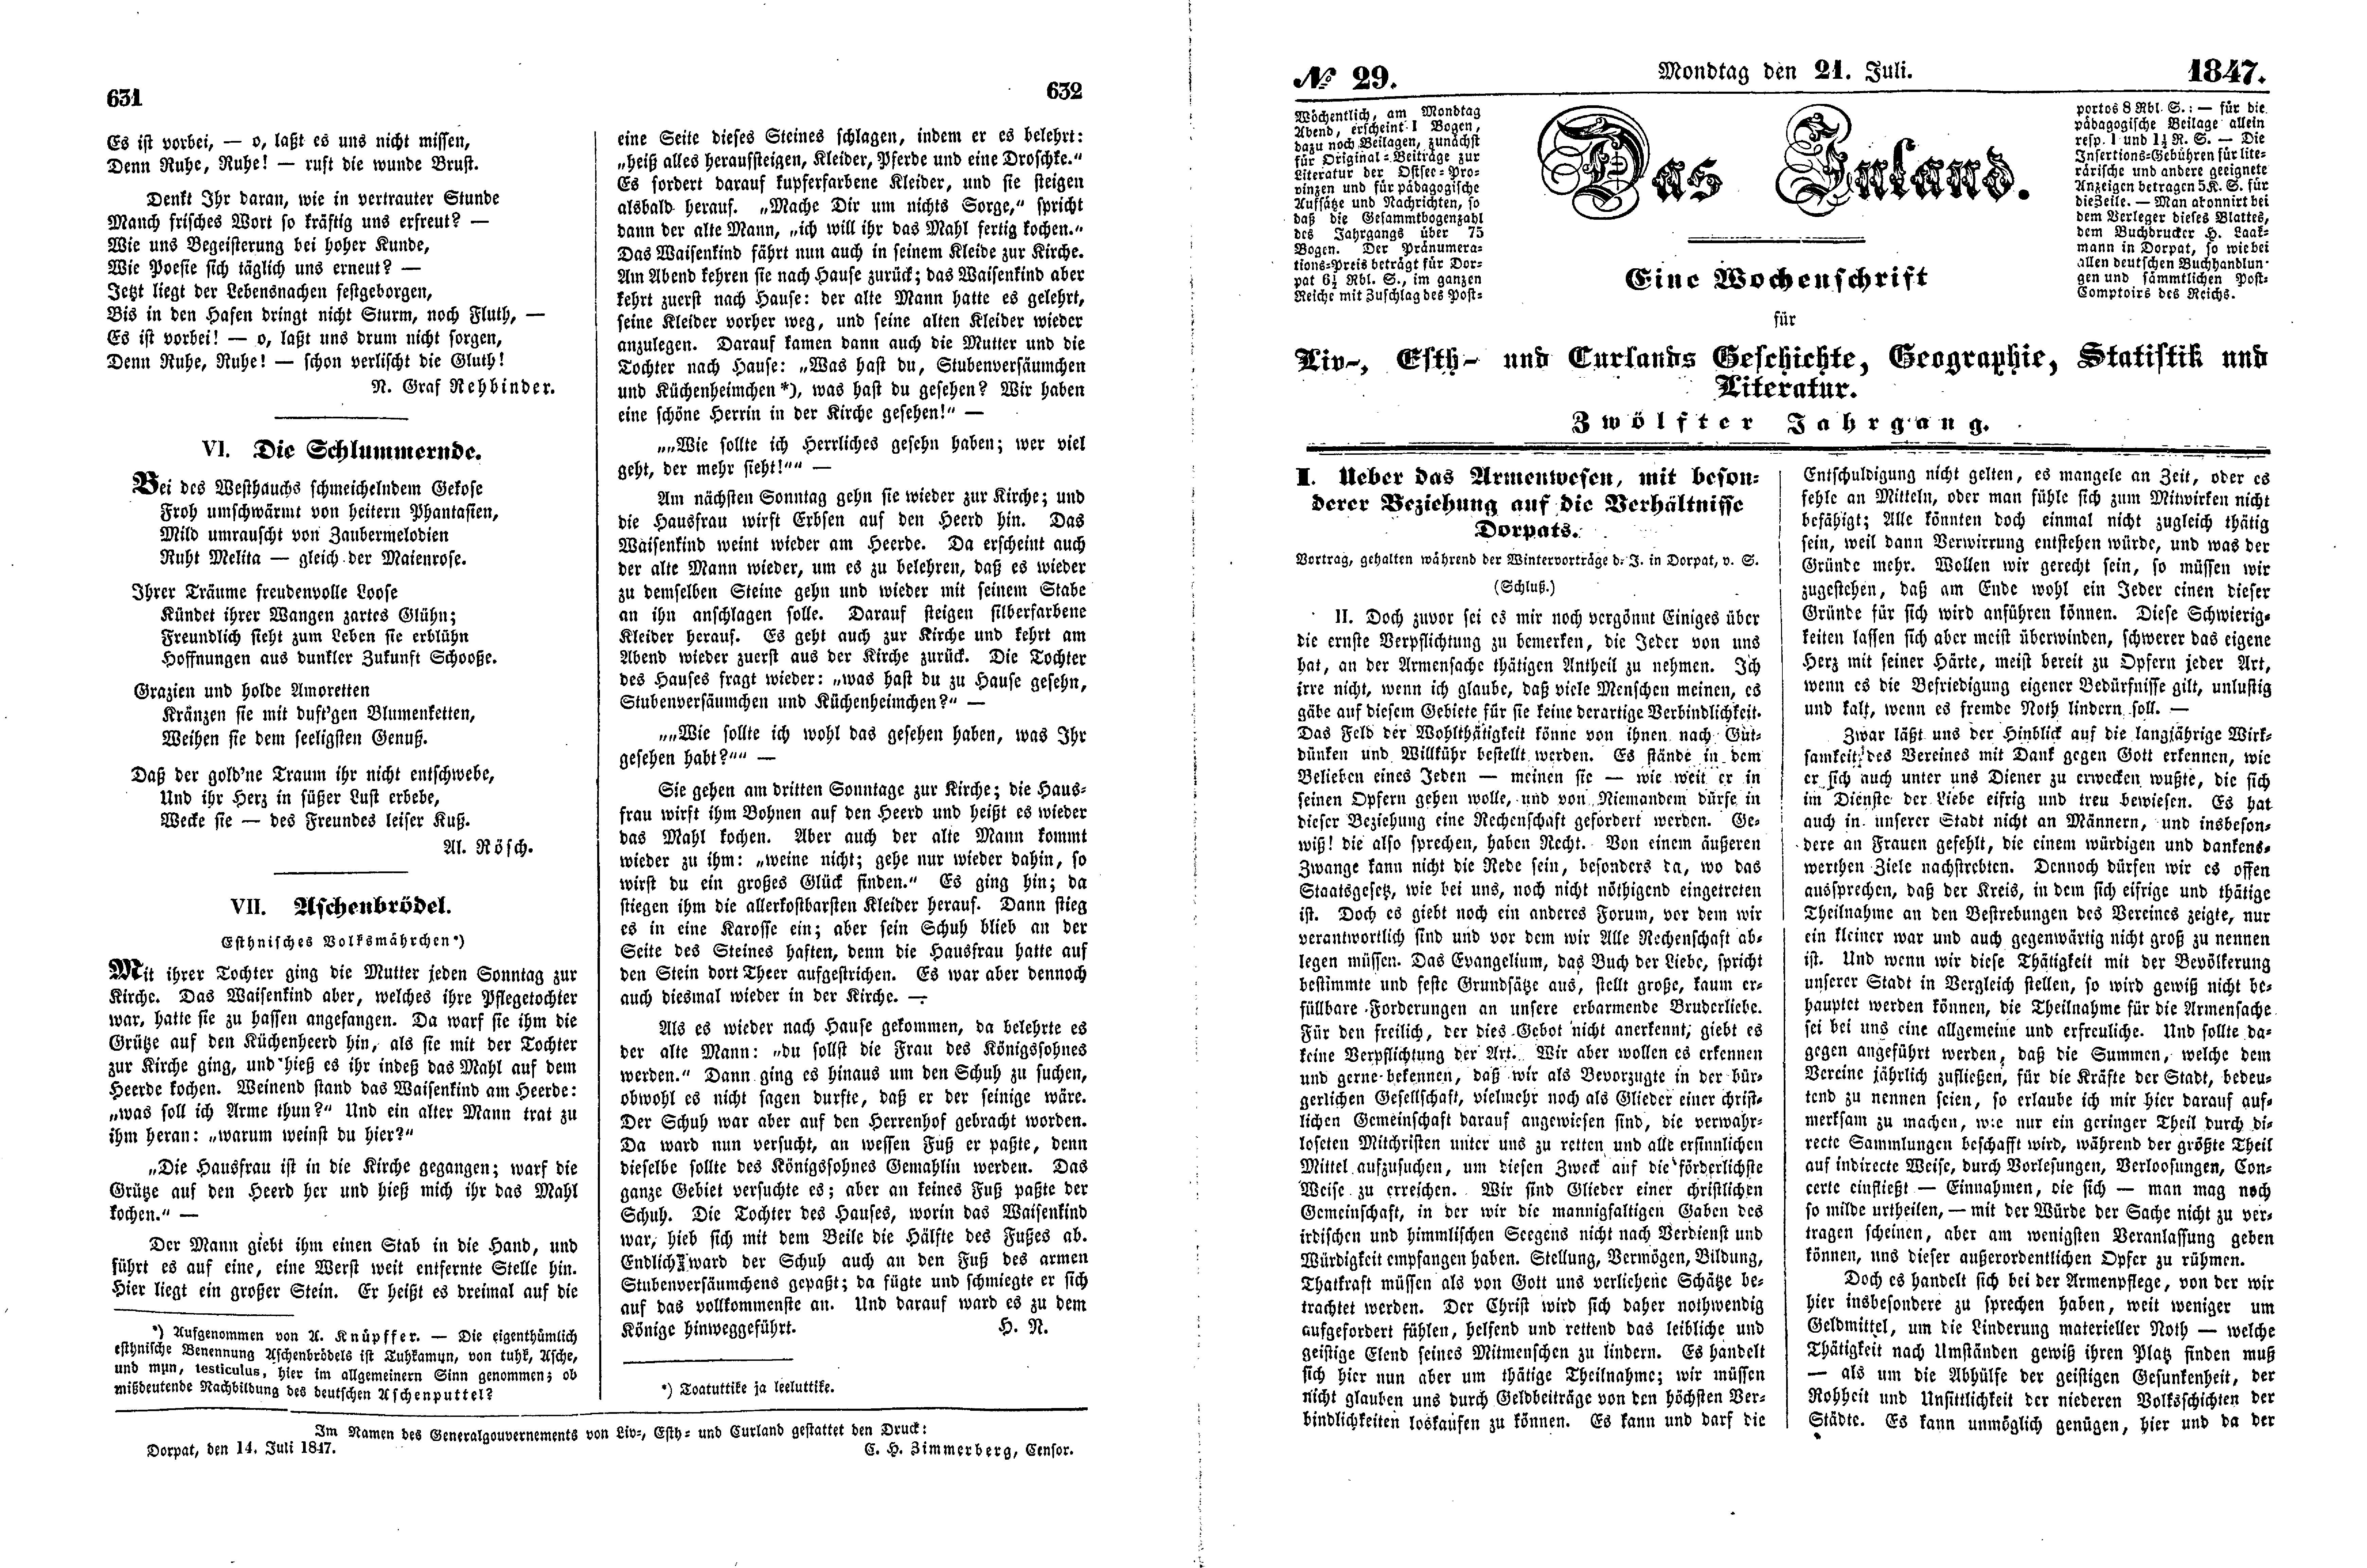 Meinen Jugendfreunden (1847) | 2. (631-634) Main body of text